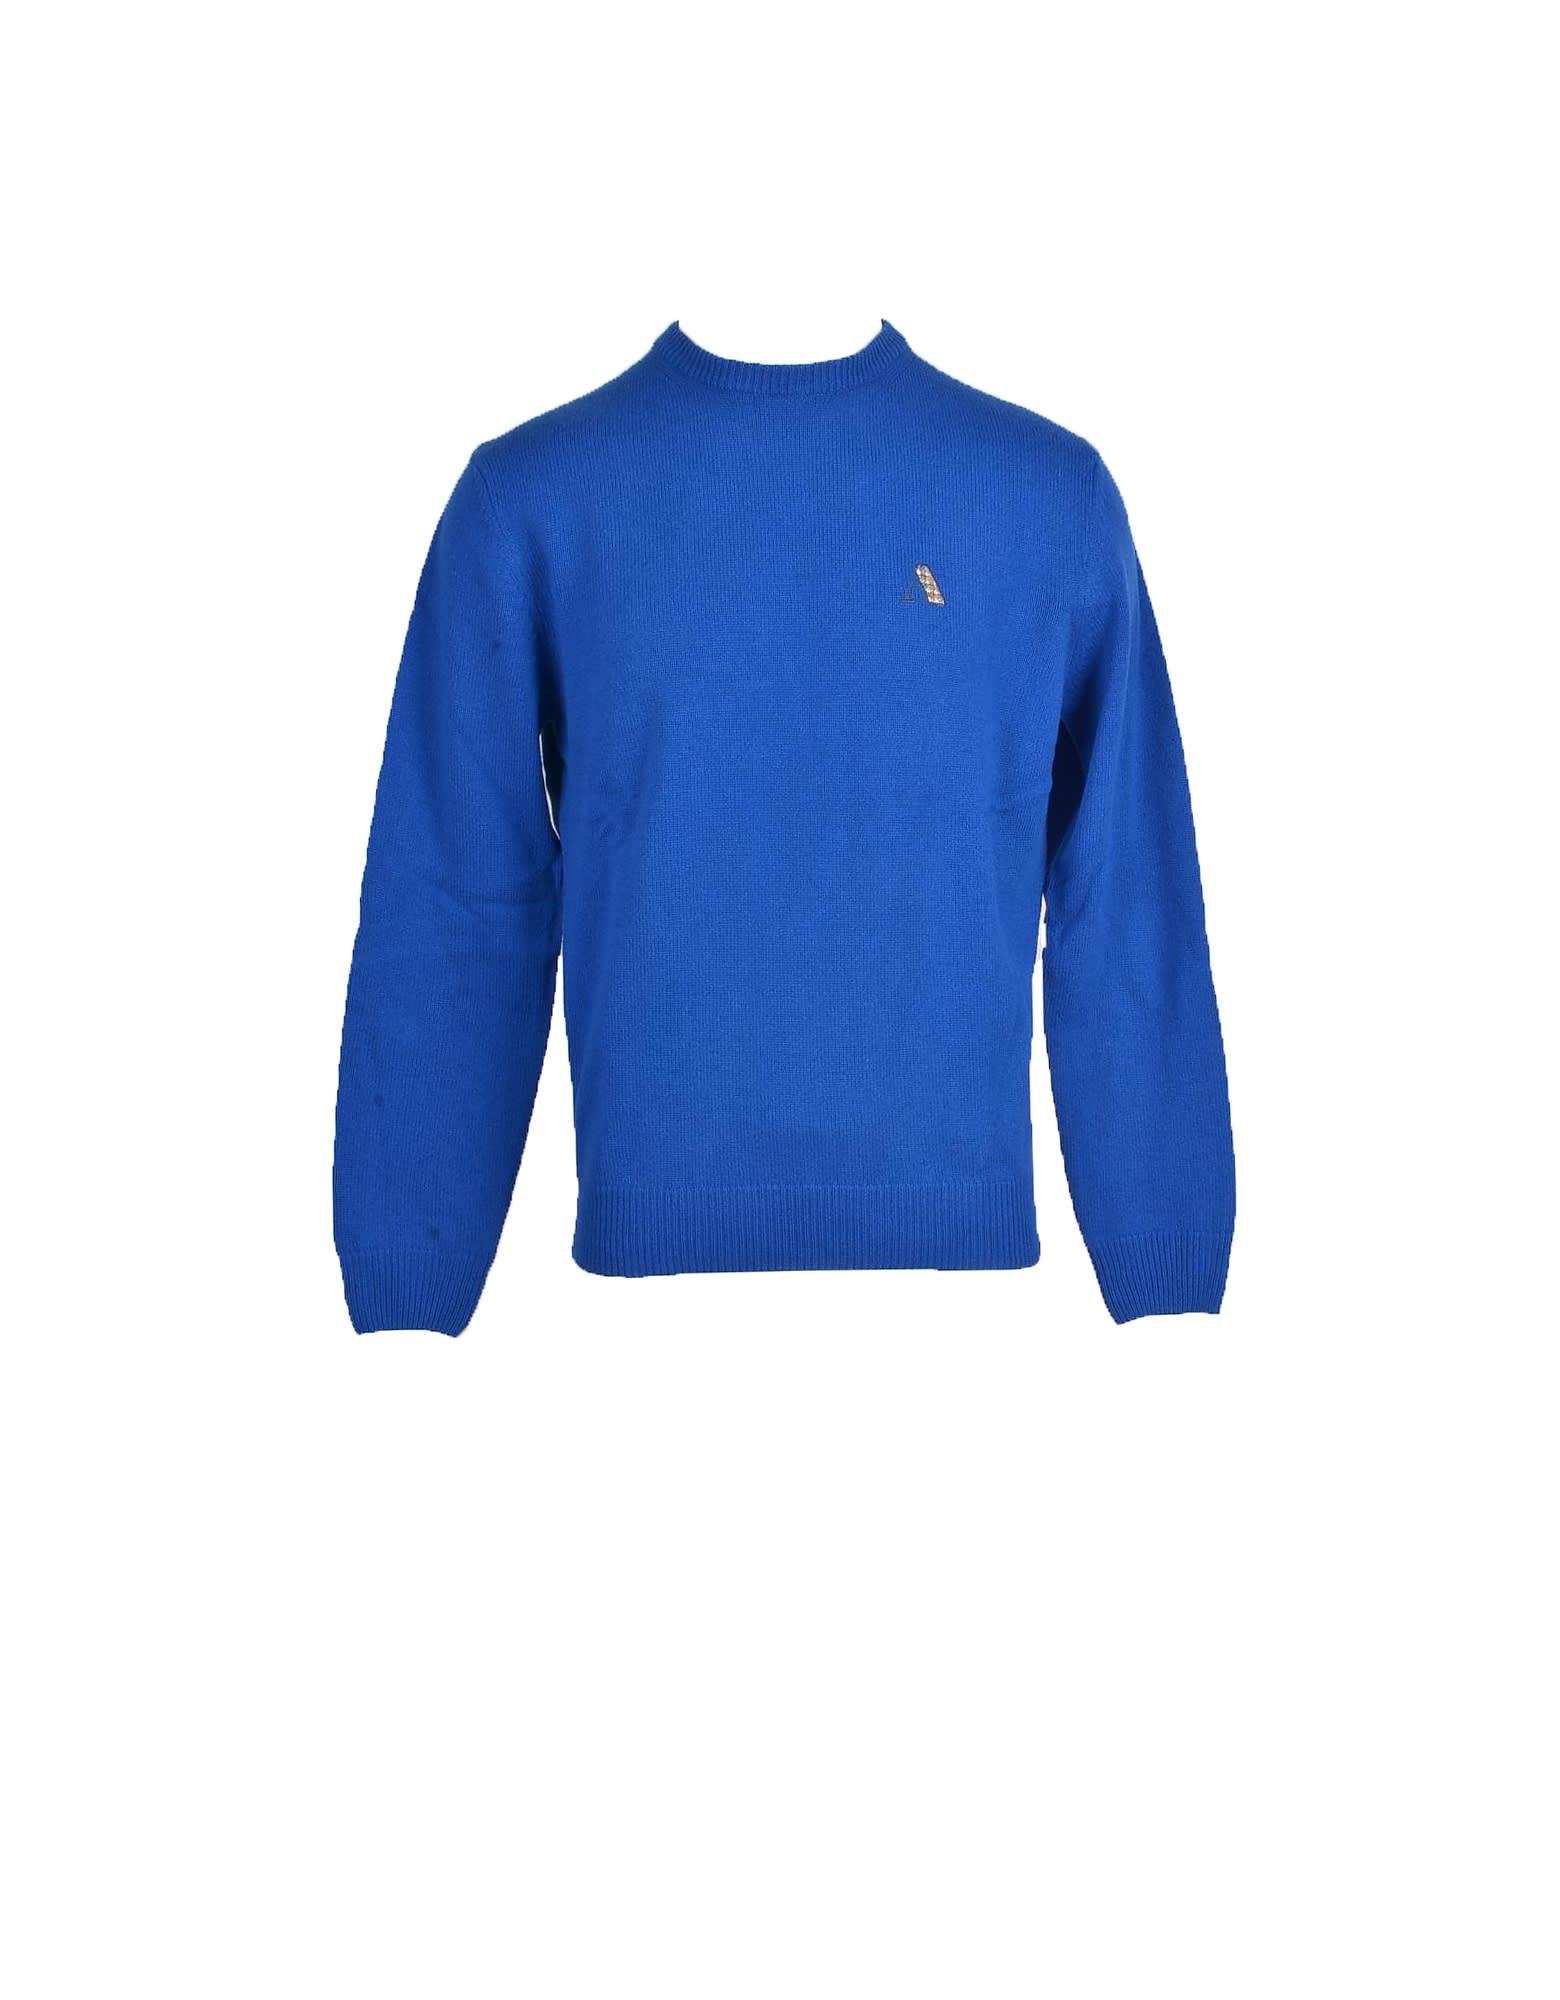 Aquascutum Mens Bluette Sweater